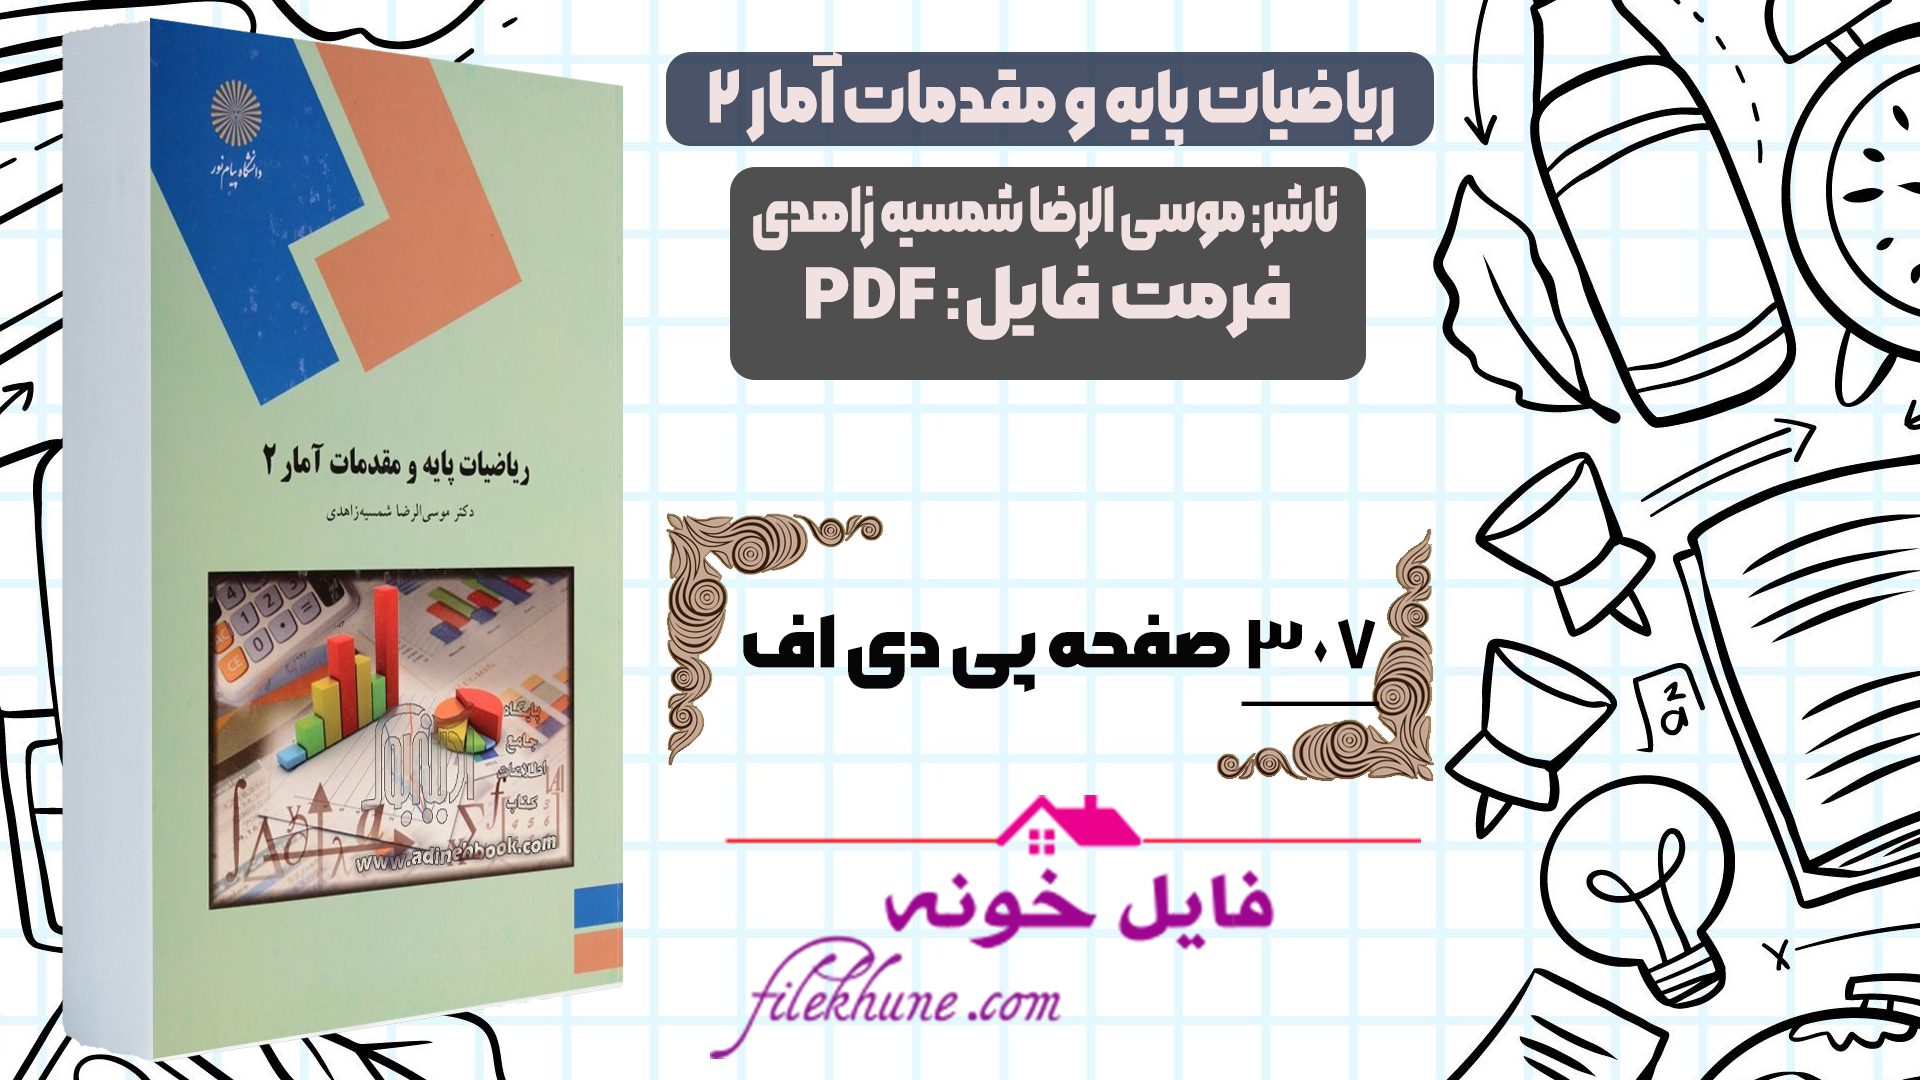 دانلود کتاب ریاضیات پایه و مقدمات آمار 2 موسی الرضا شمسیه زاهدی PDF